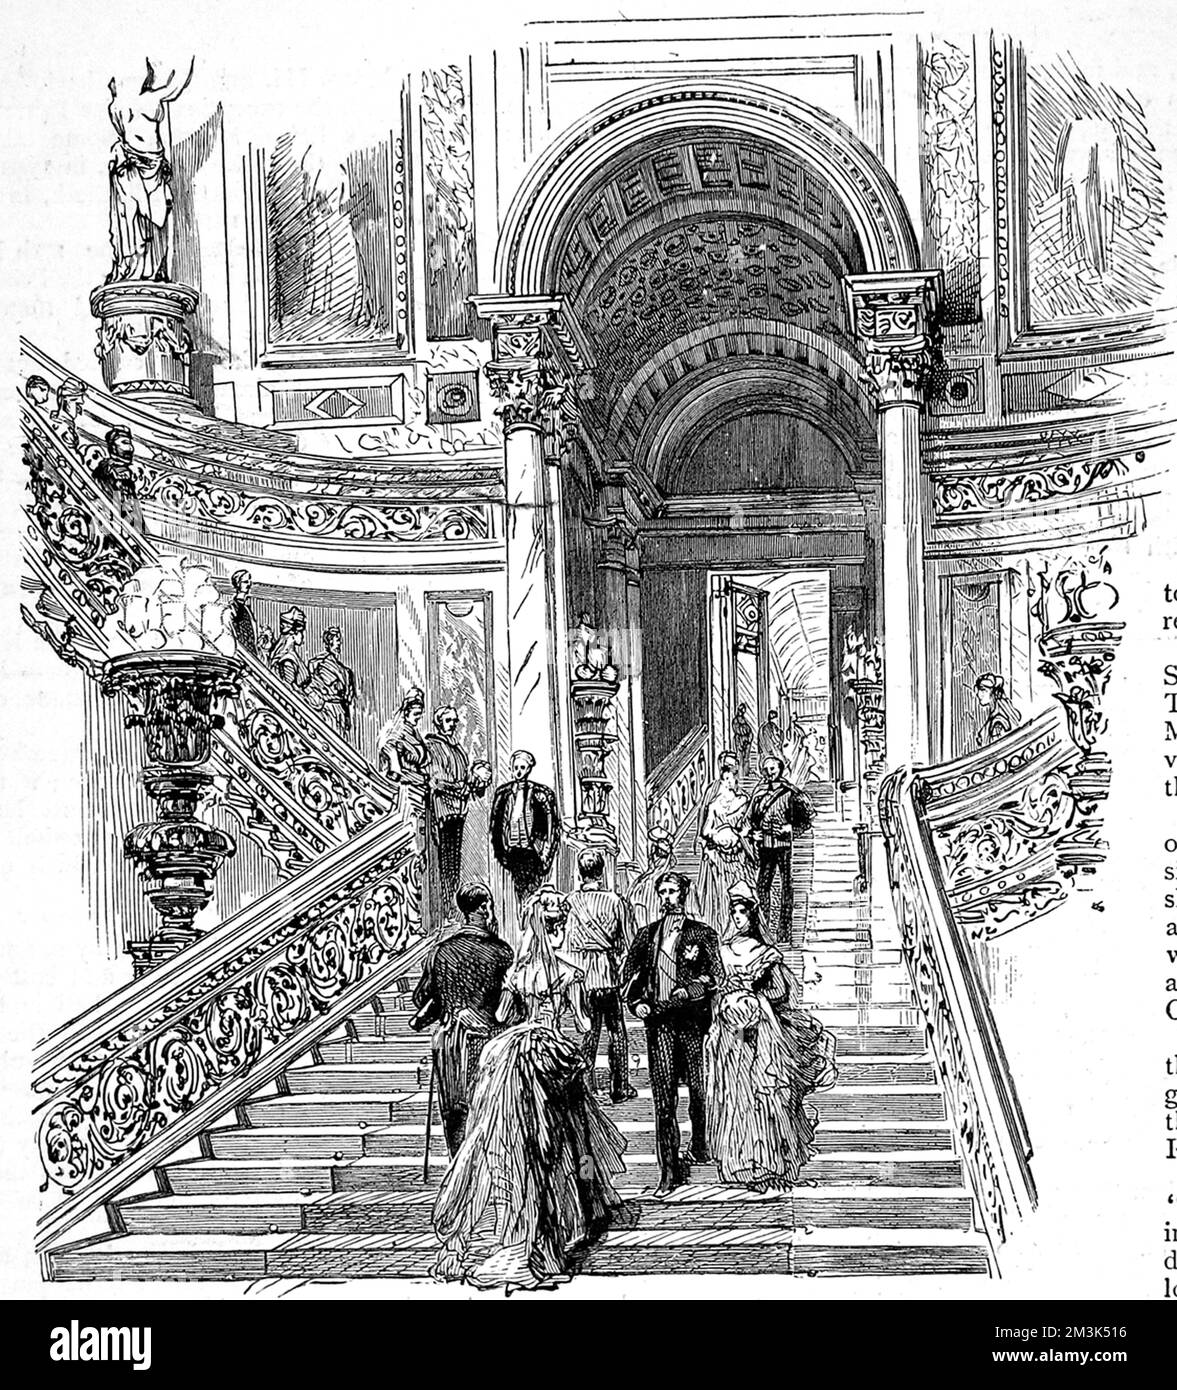 Gravure montrant le Grand escalier de Buckingham Palace, Londres, en 1887. Date : 25 juin 1887 Banque D'Images